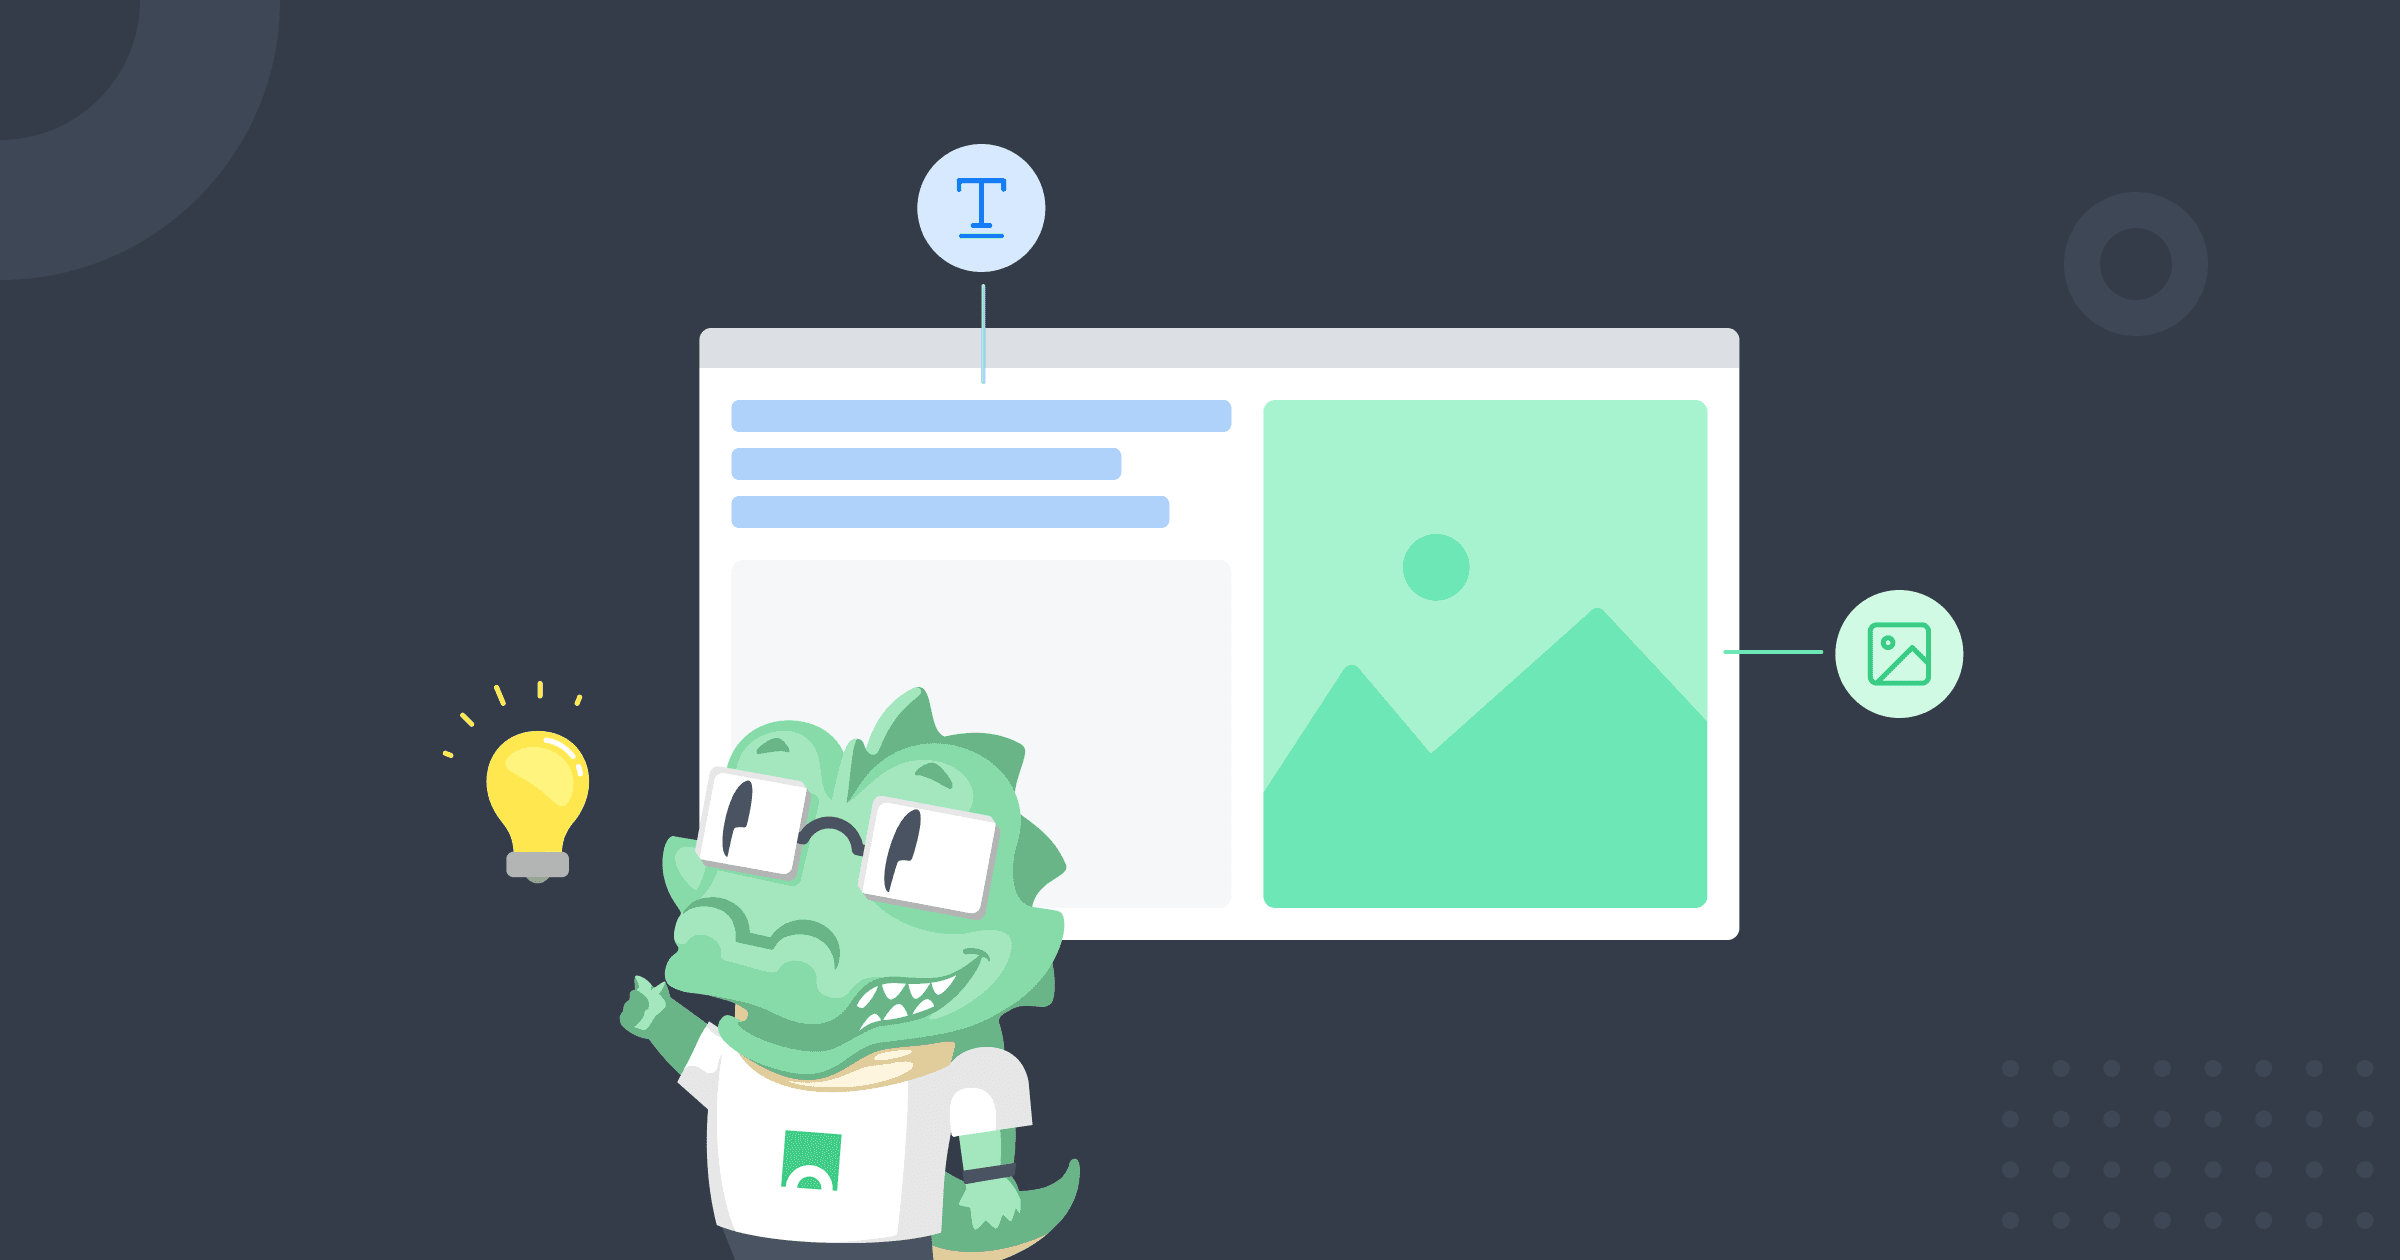 O mascote da Croct, um crocodilo, tendo uma ideia de como personalizar um site na frente de um wireframe com elementos de um site.